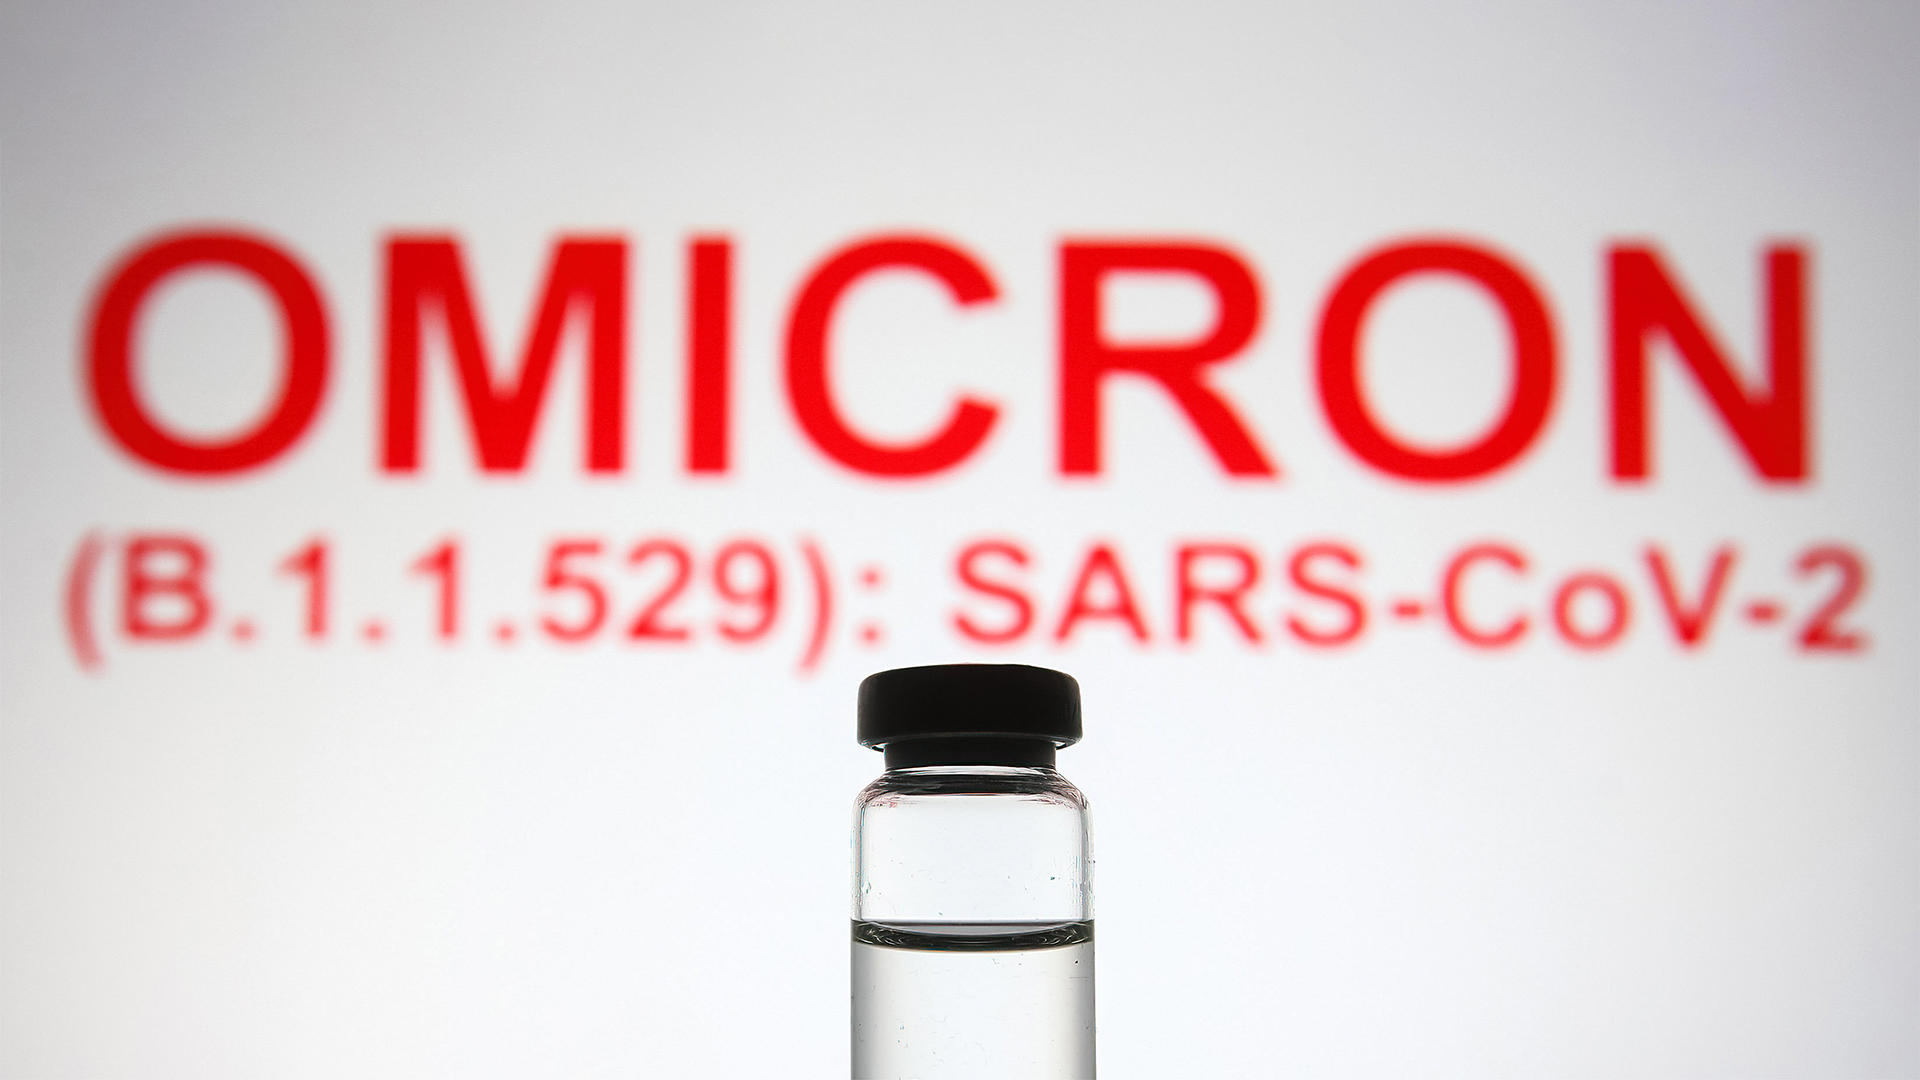 Ein Fläschchen steht vor dem Text "Omicron (B.1.1.529): SARS-CoV-2" | picture alliance / ZUMAPRESS.com